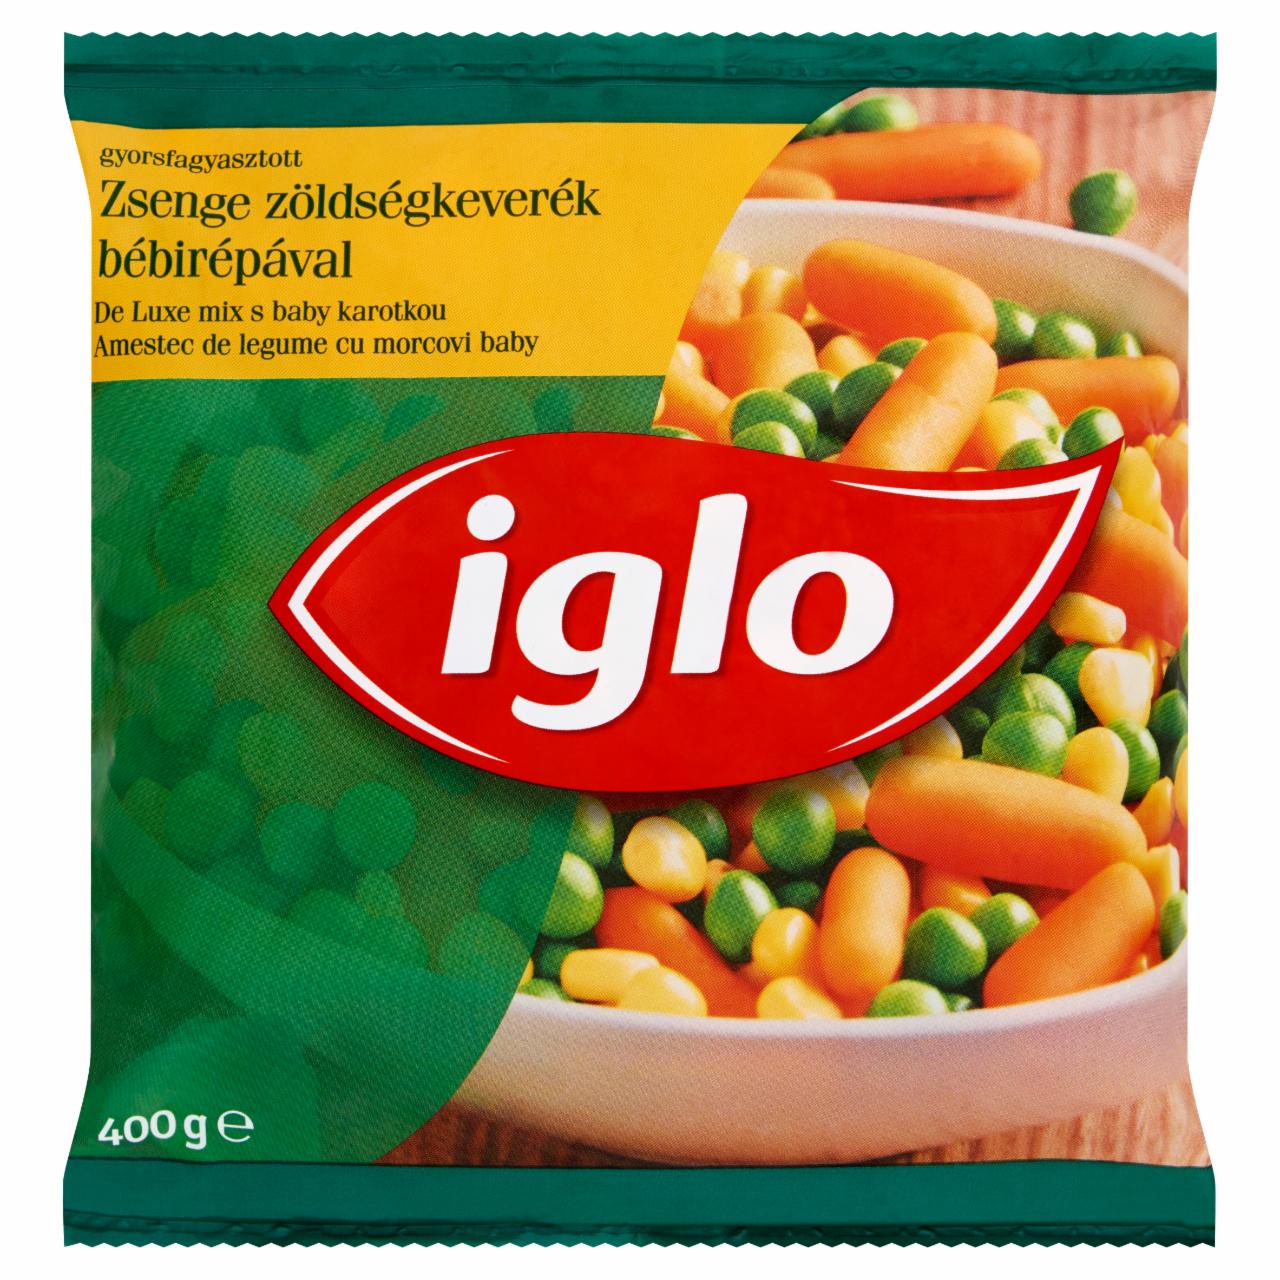 Képek - Iglo gyorsfagyasztott zsenge zöldségkeverék bébirépával 400 g